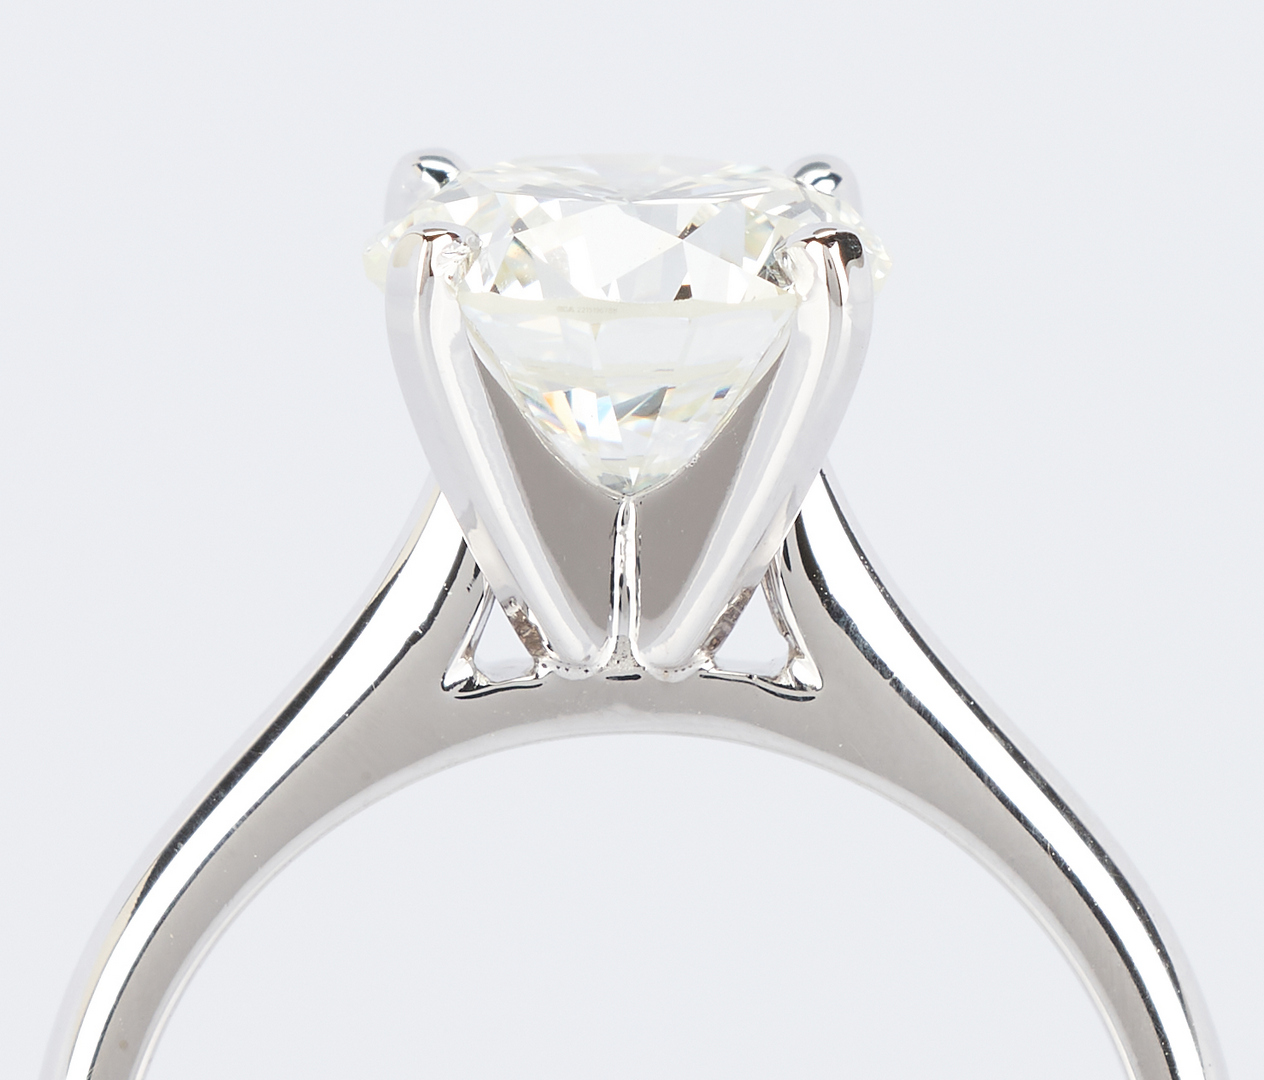 Lot 32: Ladies 2.93 ct. Round Brilliant Diamond Ring